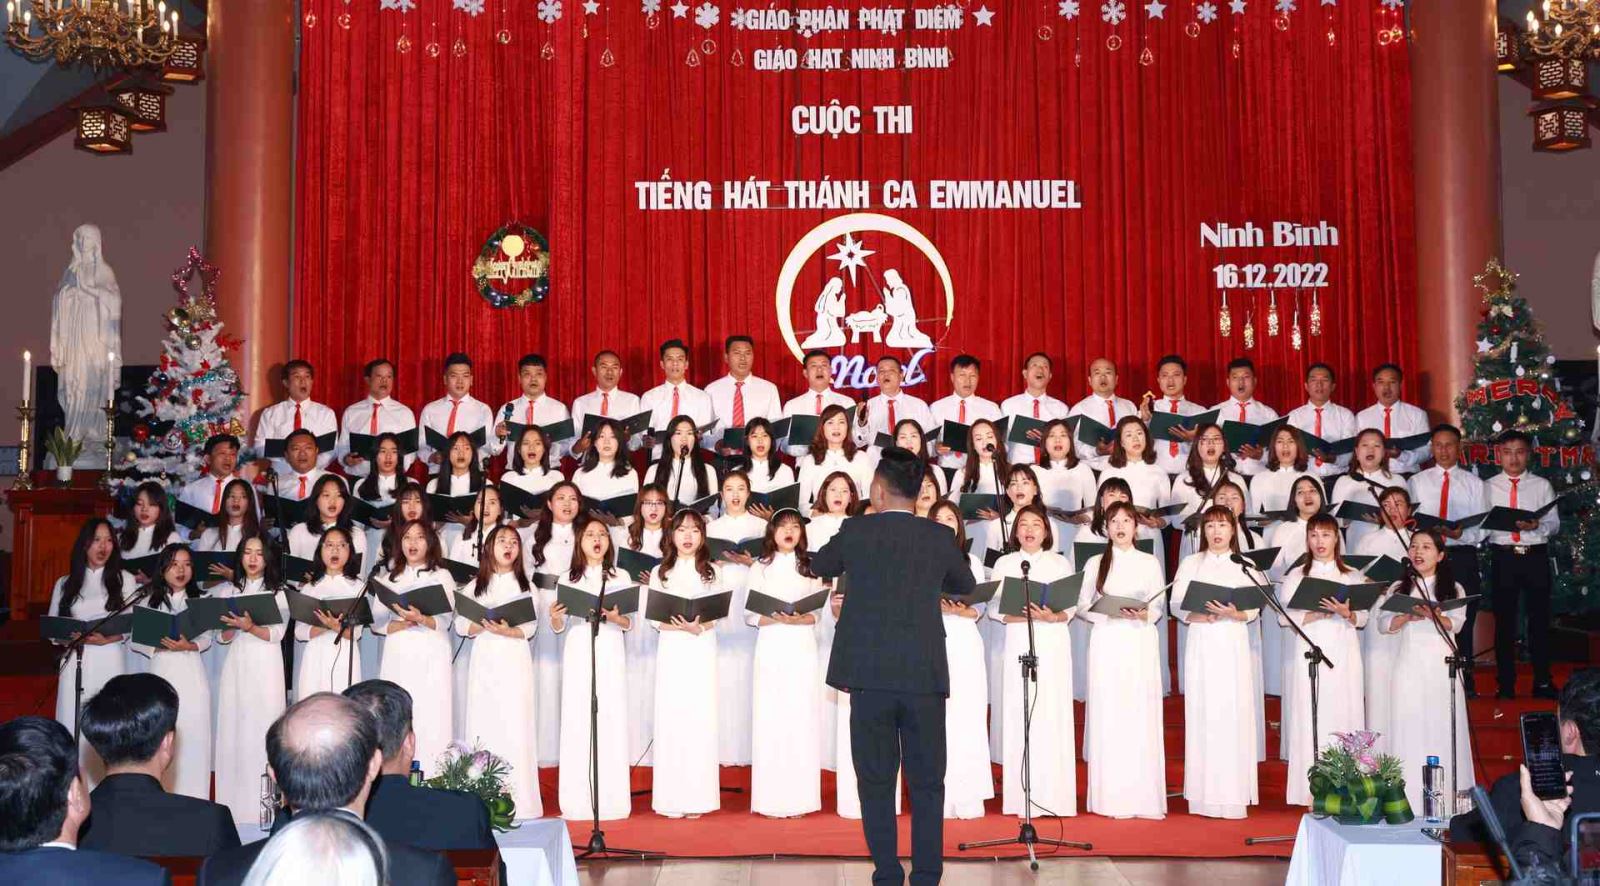 GP.Phát Diệm - Hình ảnh giáo hạt Ninh Bình thi hội diễn Thánh ca Emmanuel